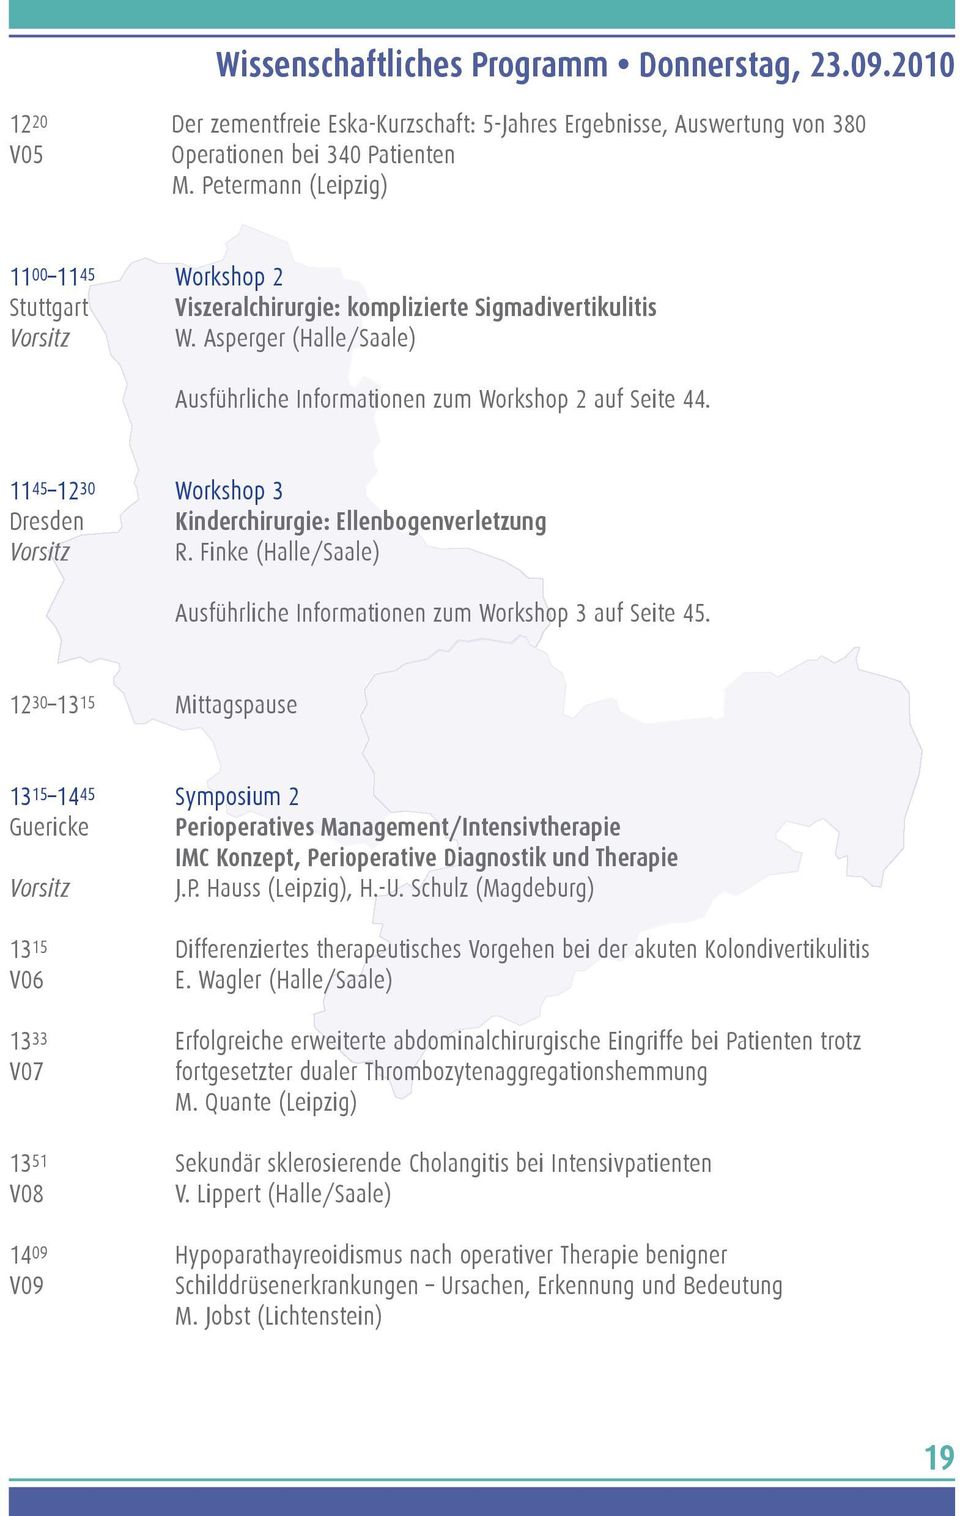 11 45 12 30 Workshop 3 Dresden Kinderchirurgie: Ellenbogenverletzung Vorsitz R. Finke (Halle/Saale) Ausführliche Informationen zum Workshop 3 auf Seite 45.